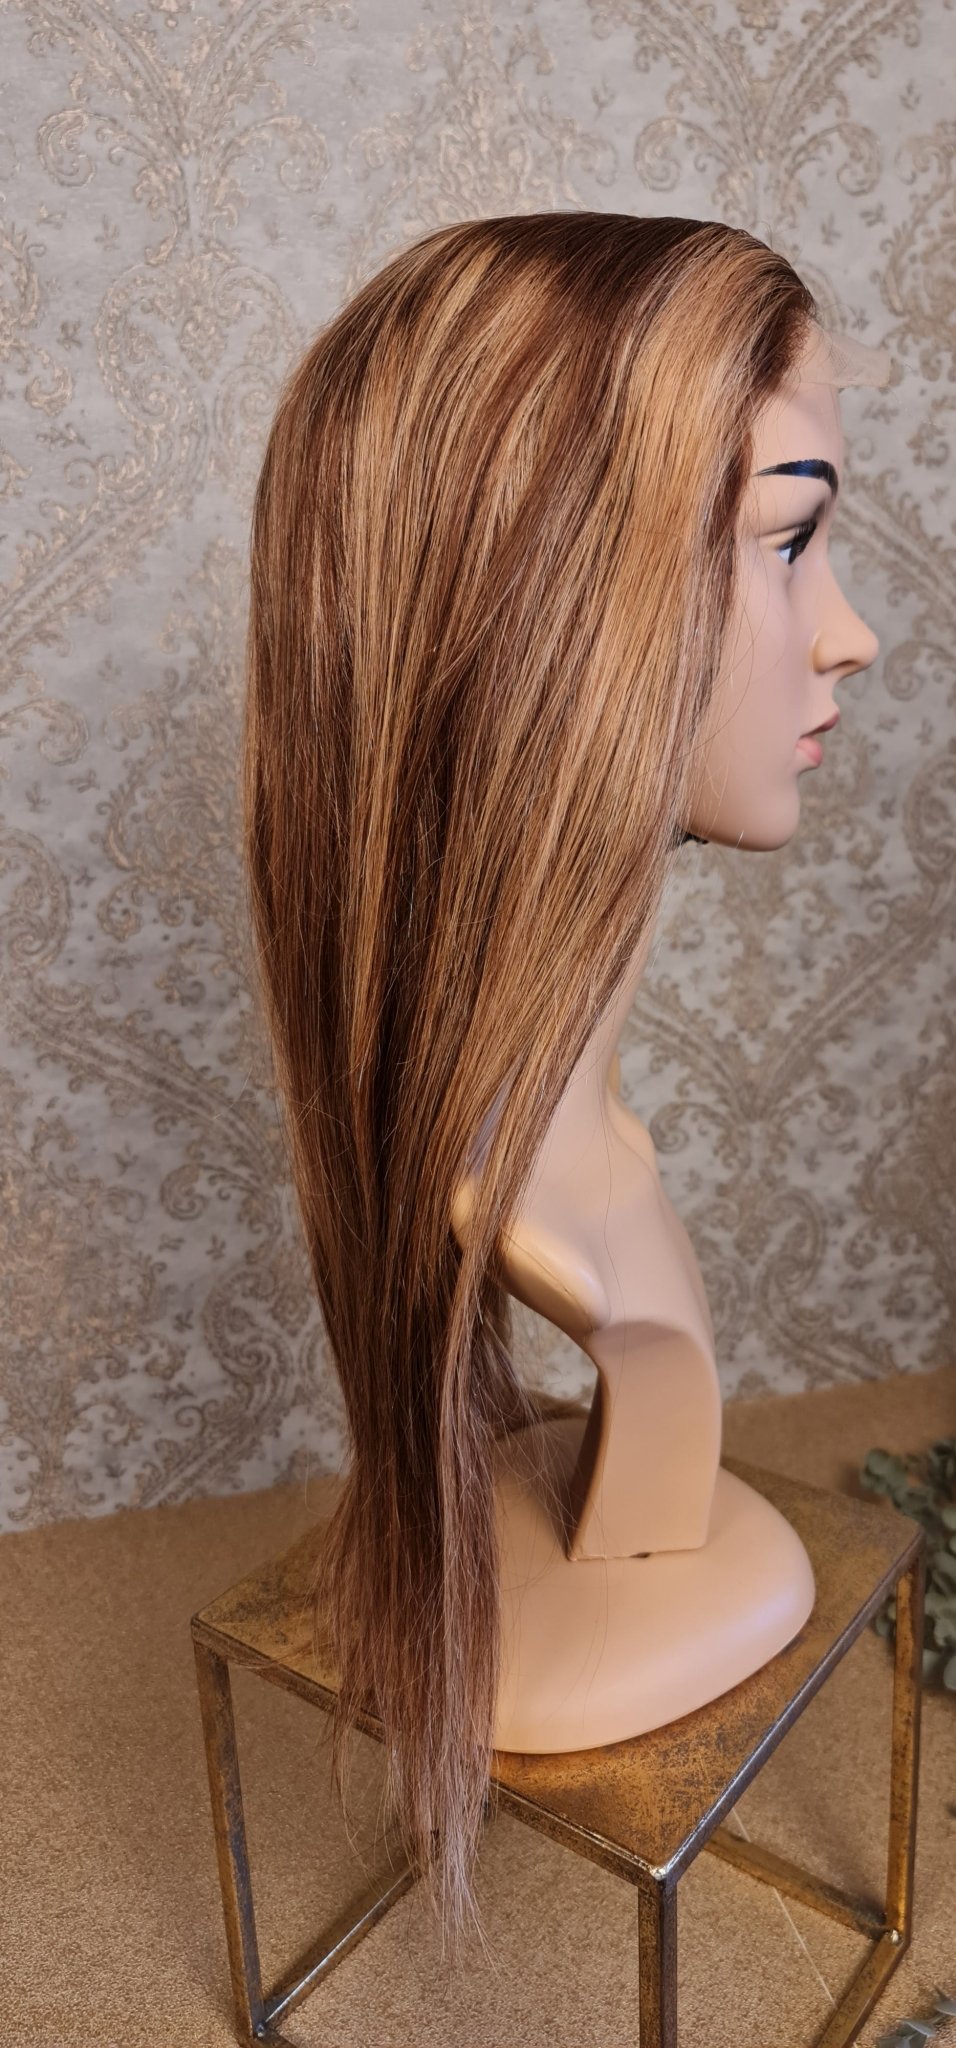 Perücke 24" 60cm glatt mit Closure 5x5 Farbe P4/27Diosa Extensions Haarverlängerungen